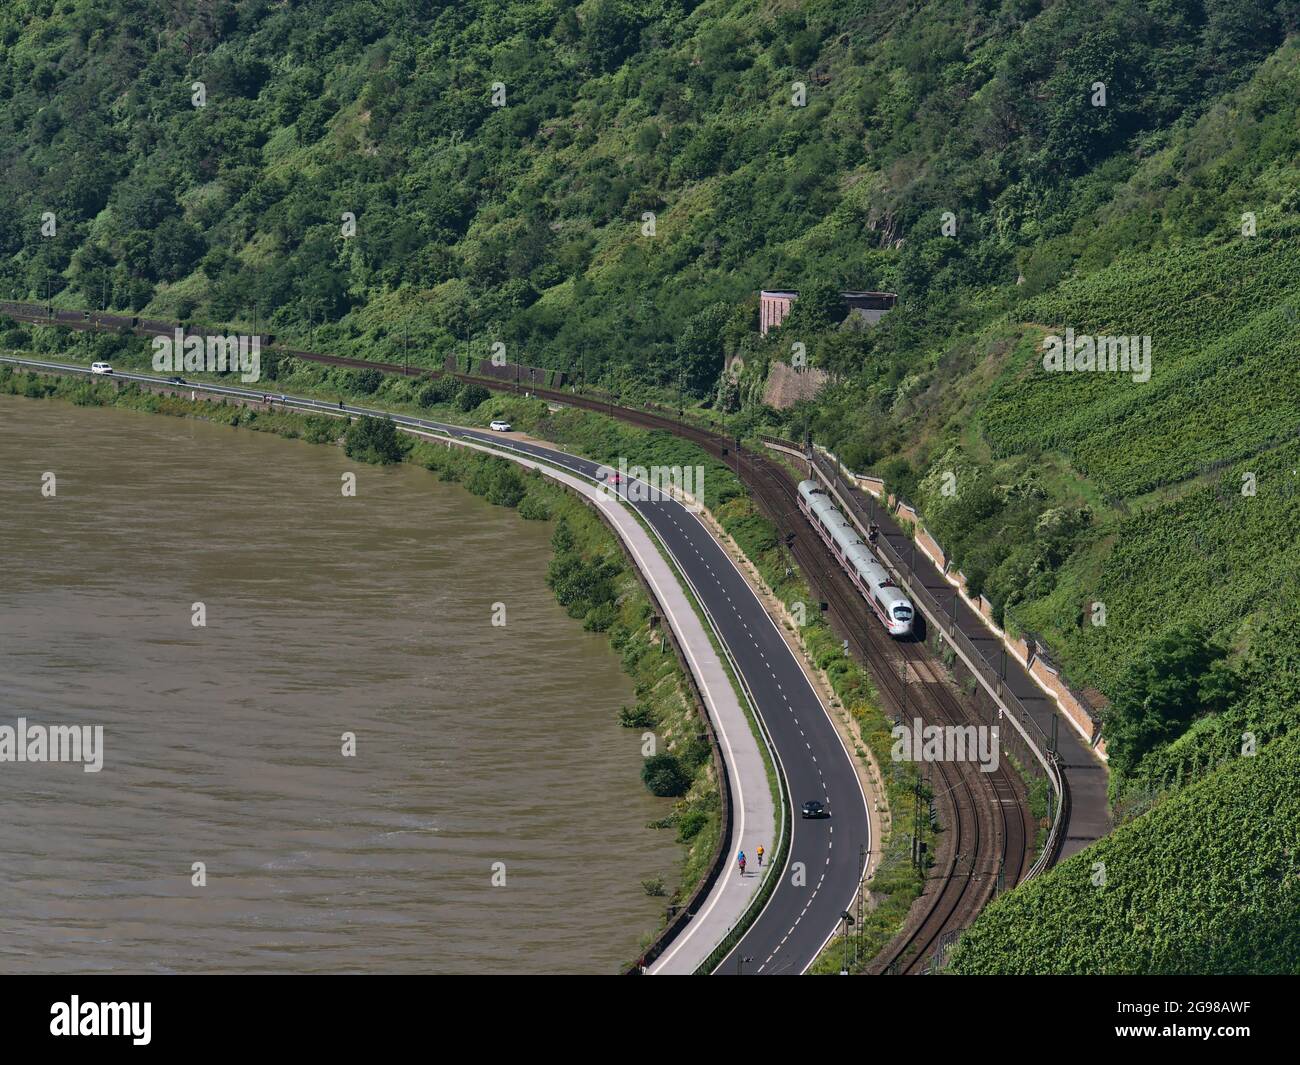 Luftaufnahme des Rheinufers mit Bahngleisen und dem ICE-Zug der Deutschen Bahn, der an sonnigen Tagen Autos auf der angrenzenden Straße vorbeifährt. Stockfoto